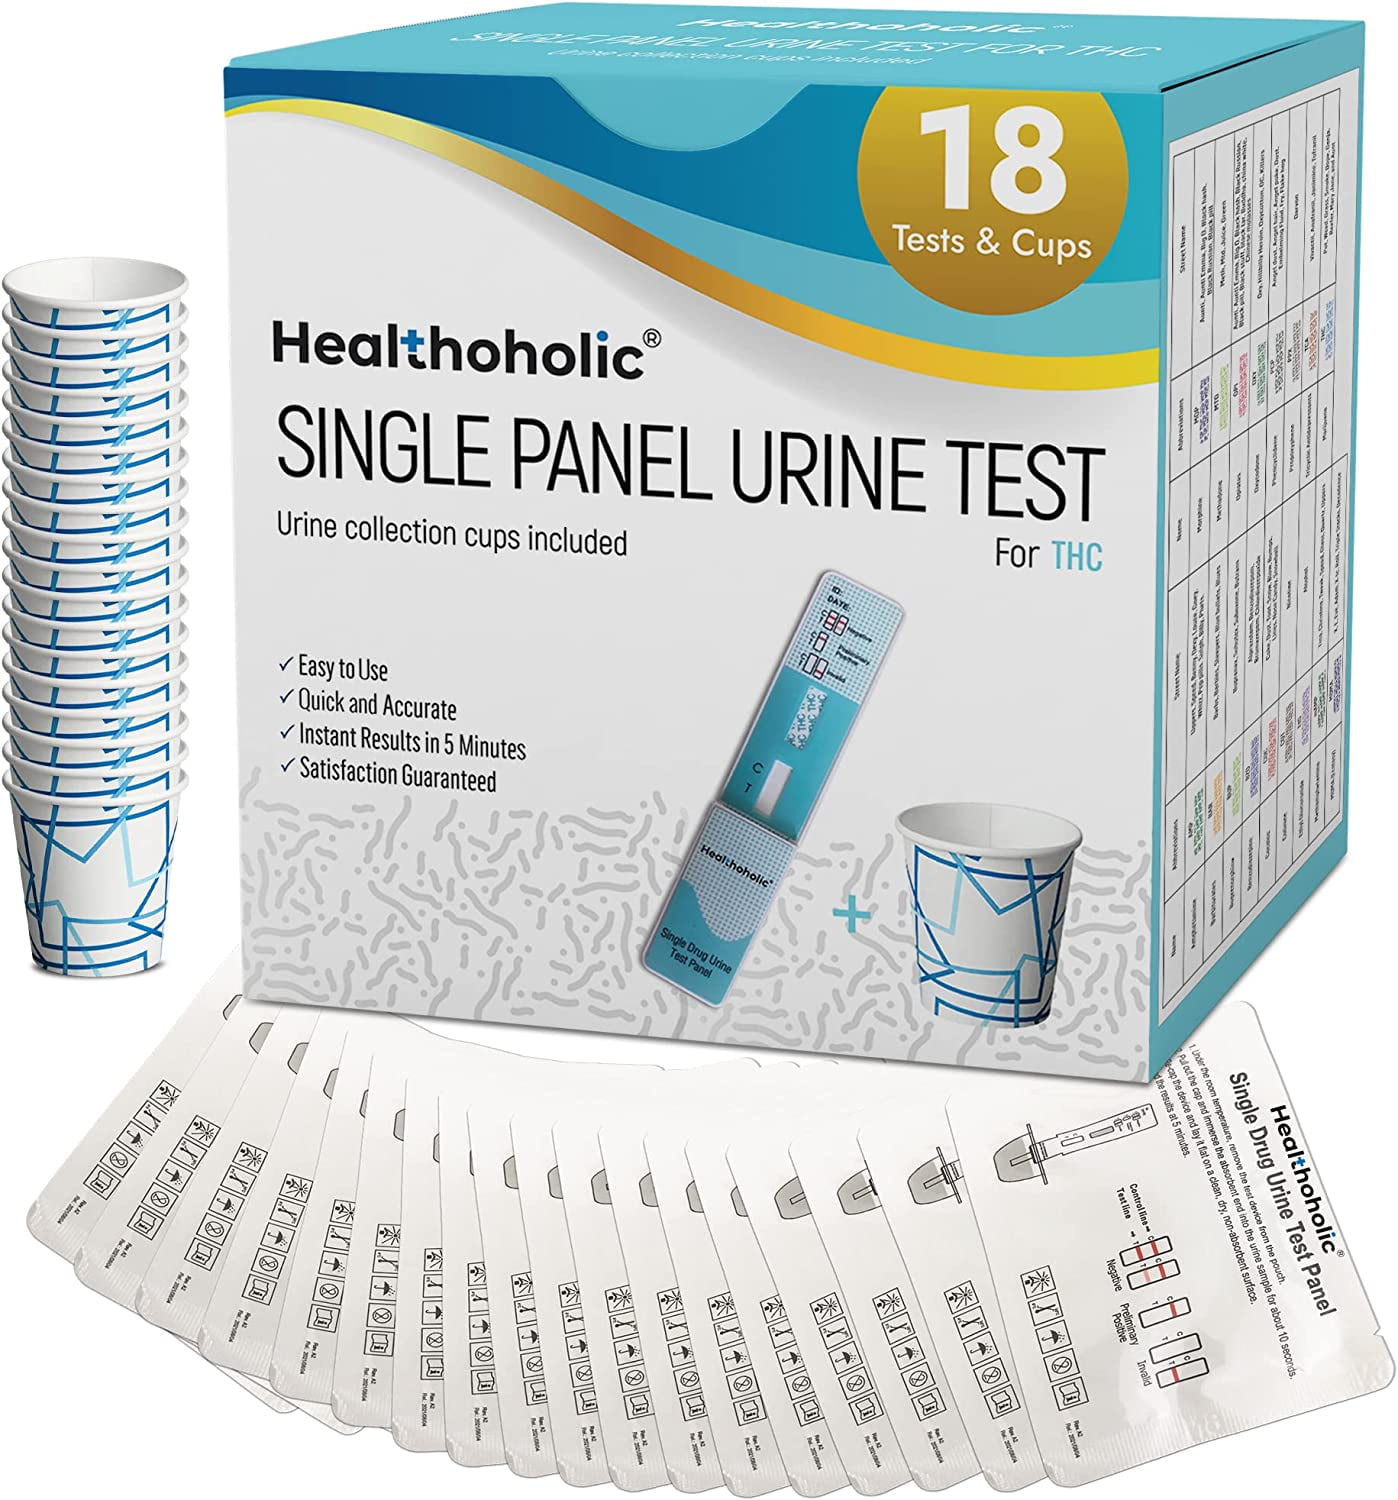 Do at-home drug tests work? 